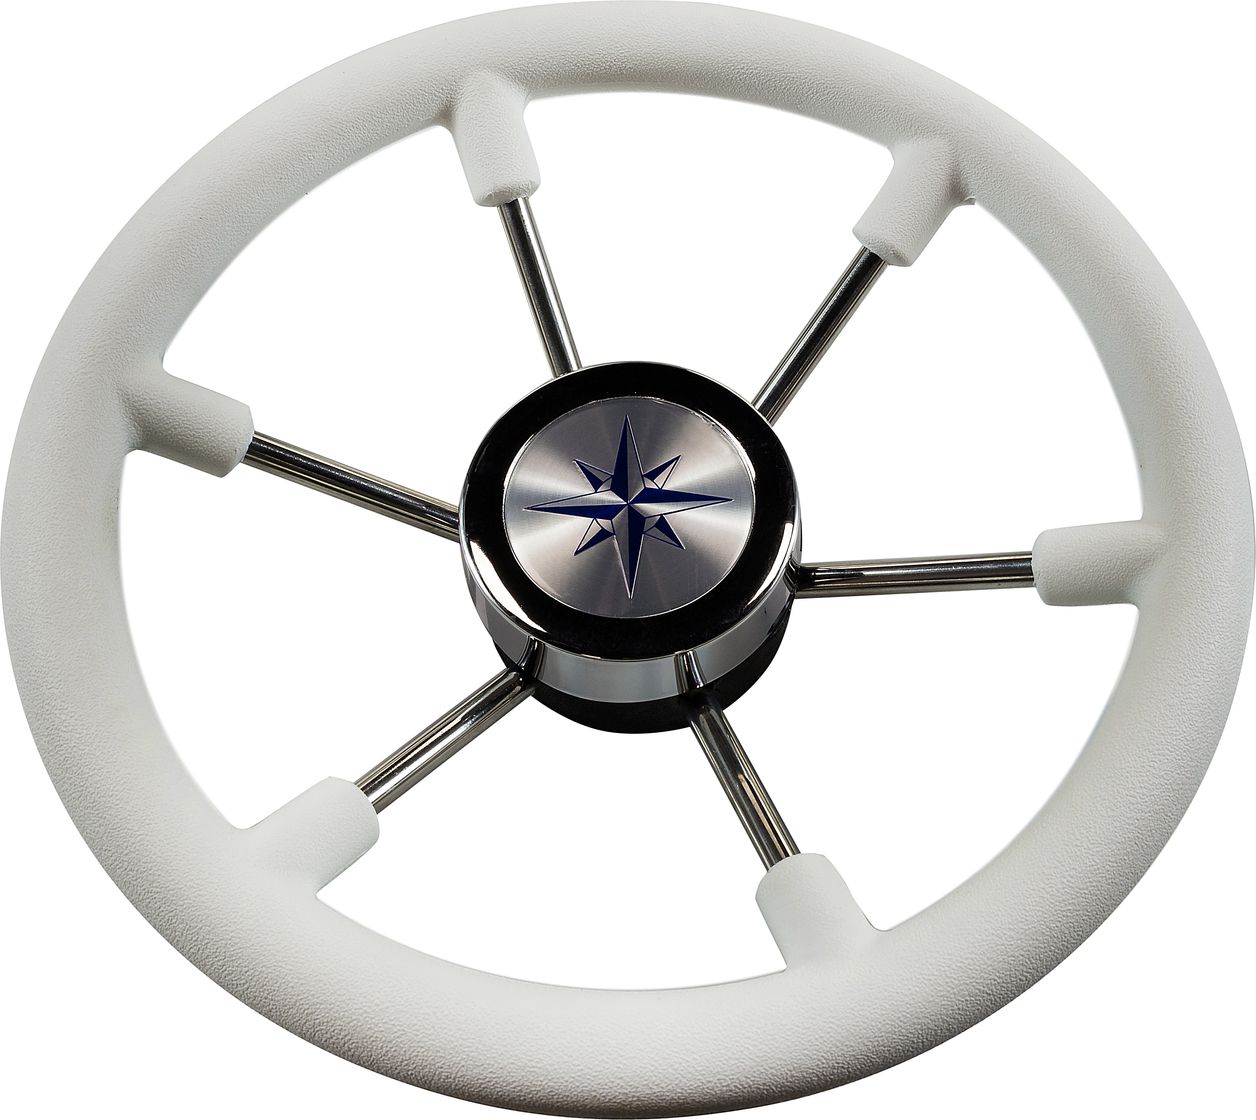 Рулевое колесо LEADER PLAST белый обод серебряные спицы д. 330 мм VN8330-08 рулевое колесо matrix белый обод more 10016474